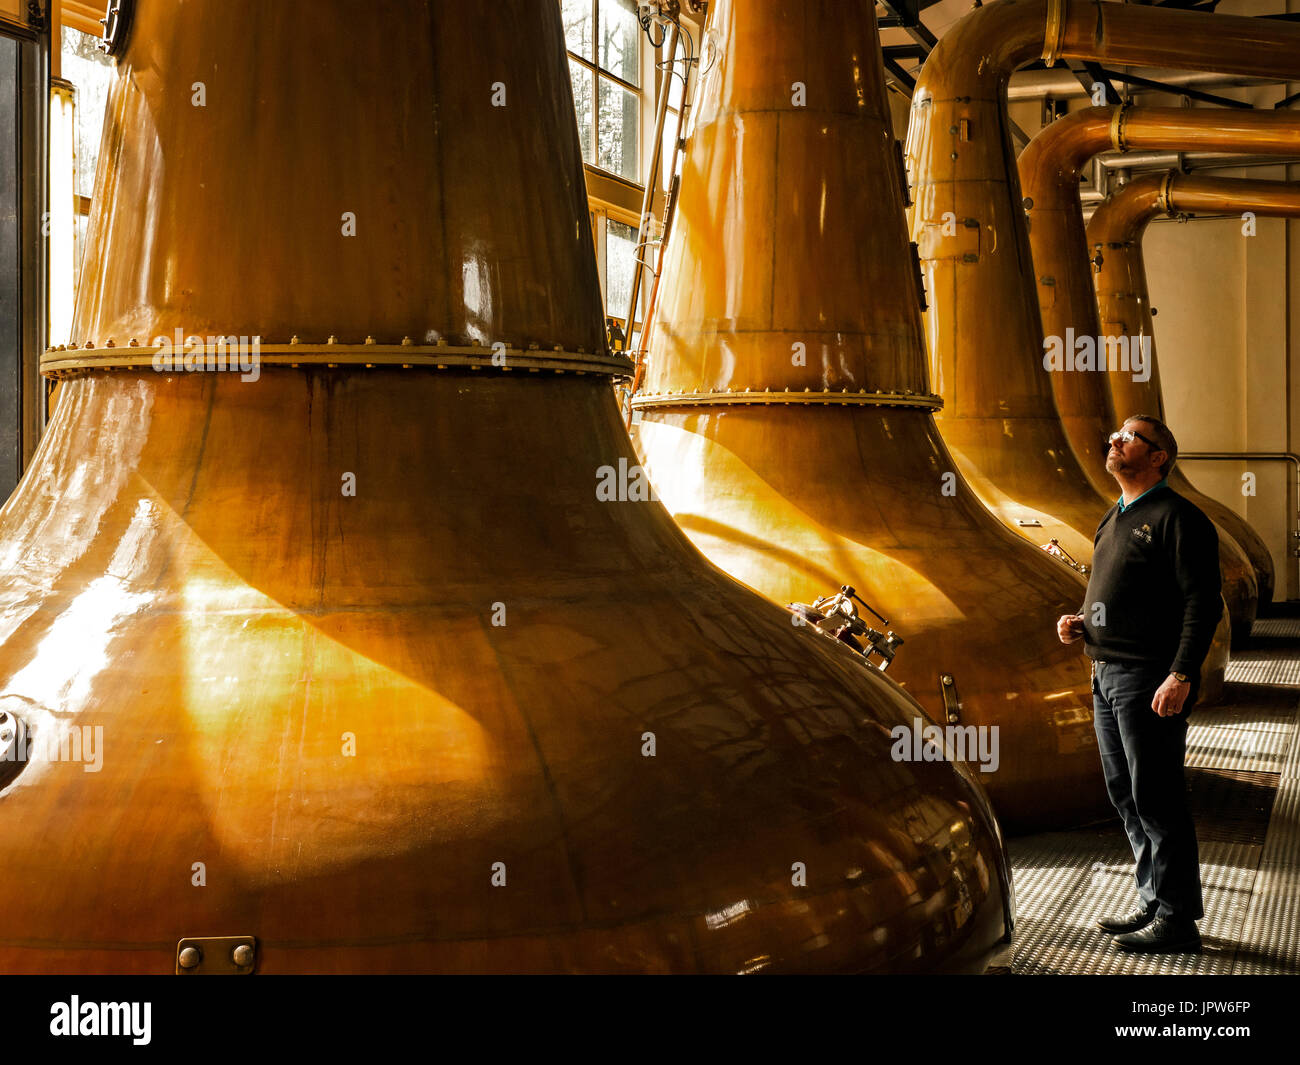 Singleton Single Malt Scotch Whisky von Glen Ord Distillery Stockfoto